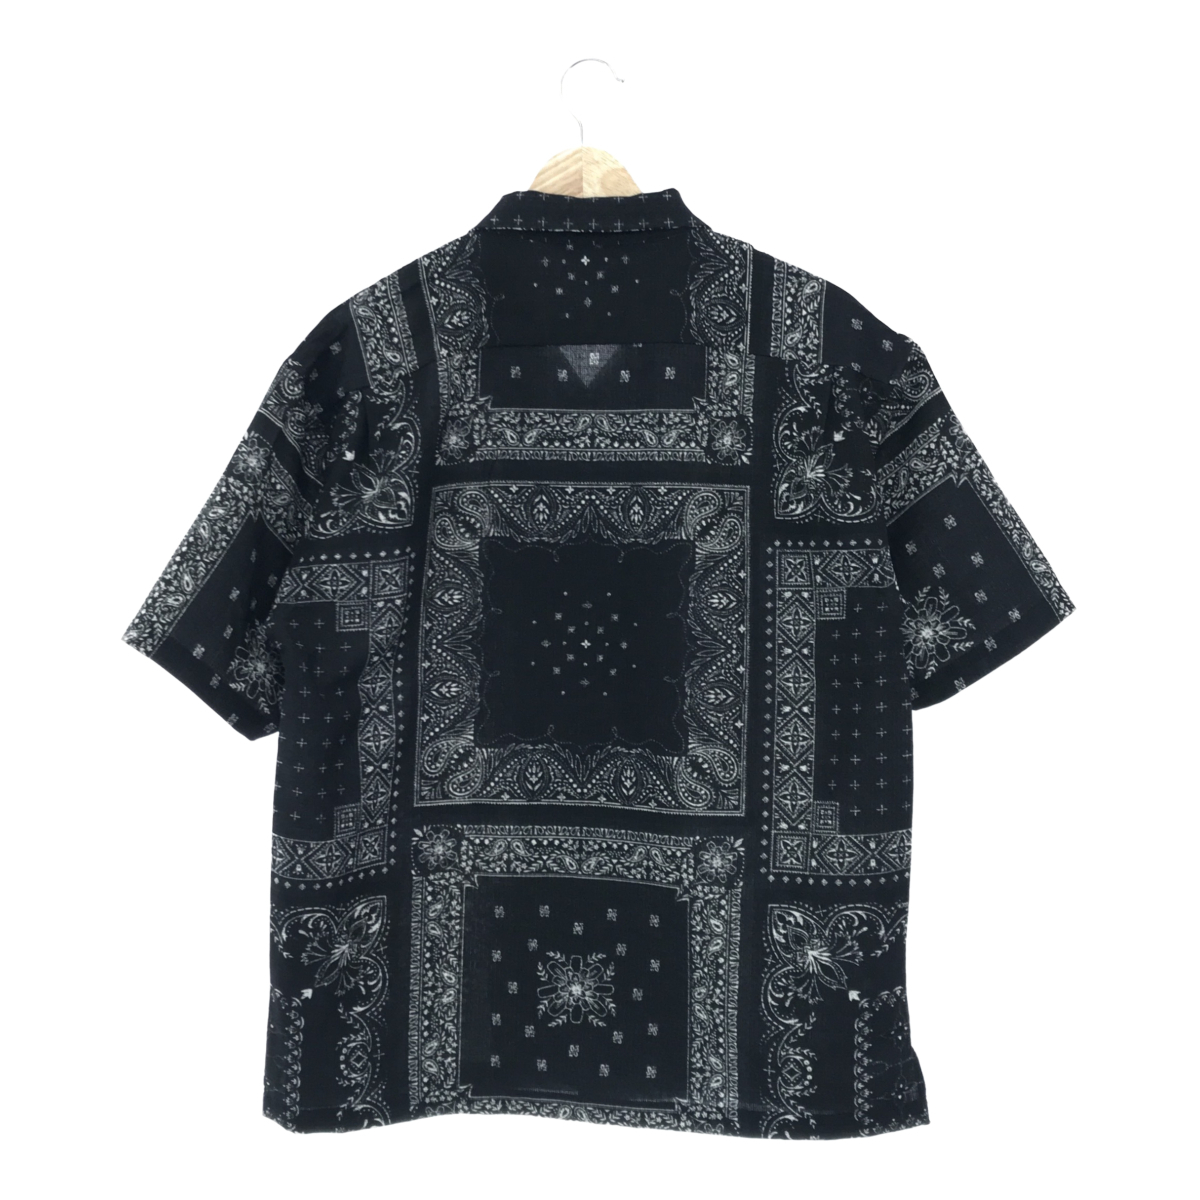 THE NORTH FACE ザノースフェイス NR22330 S/S Aloha Vent Shirt ショートスリーブアロハベントシャツ 半袖シャツ S ブラック ペイズリー_画像2